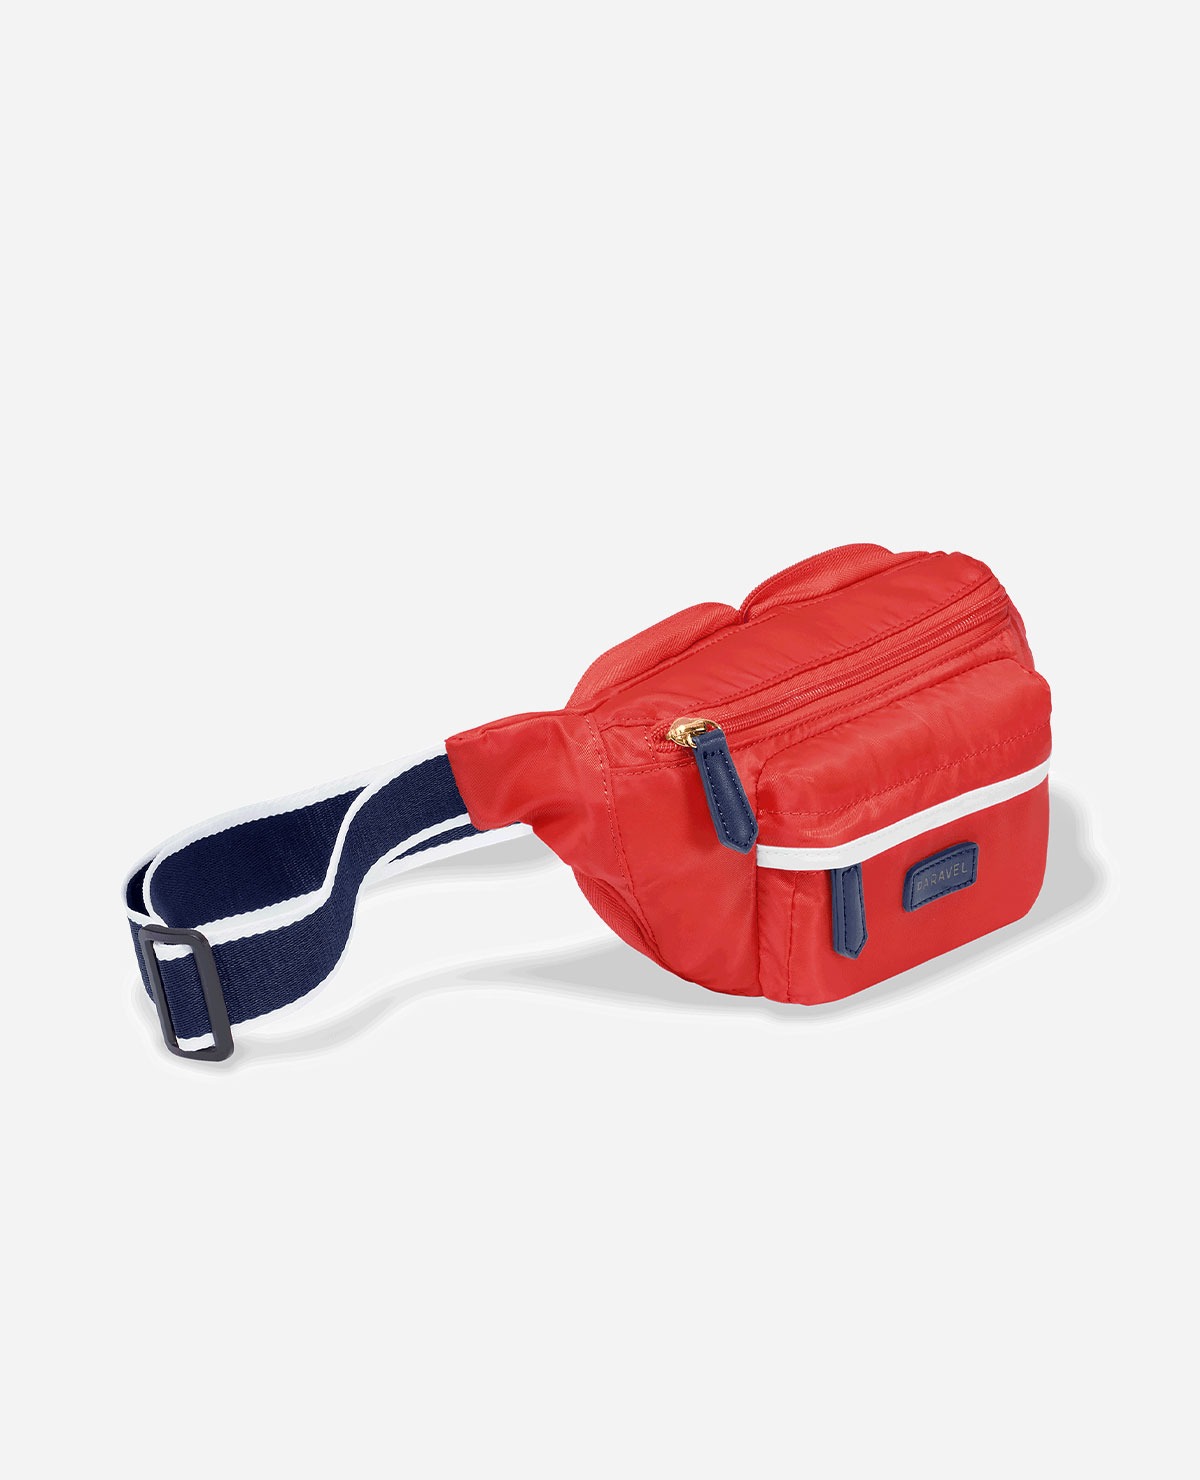 Fold-Up Belt Bag